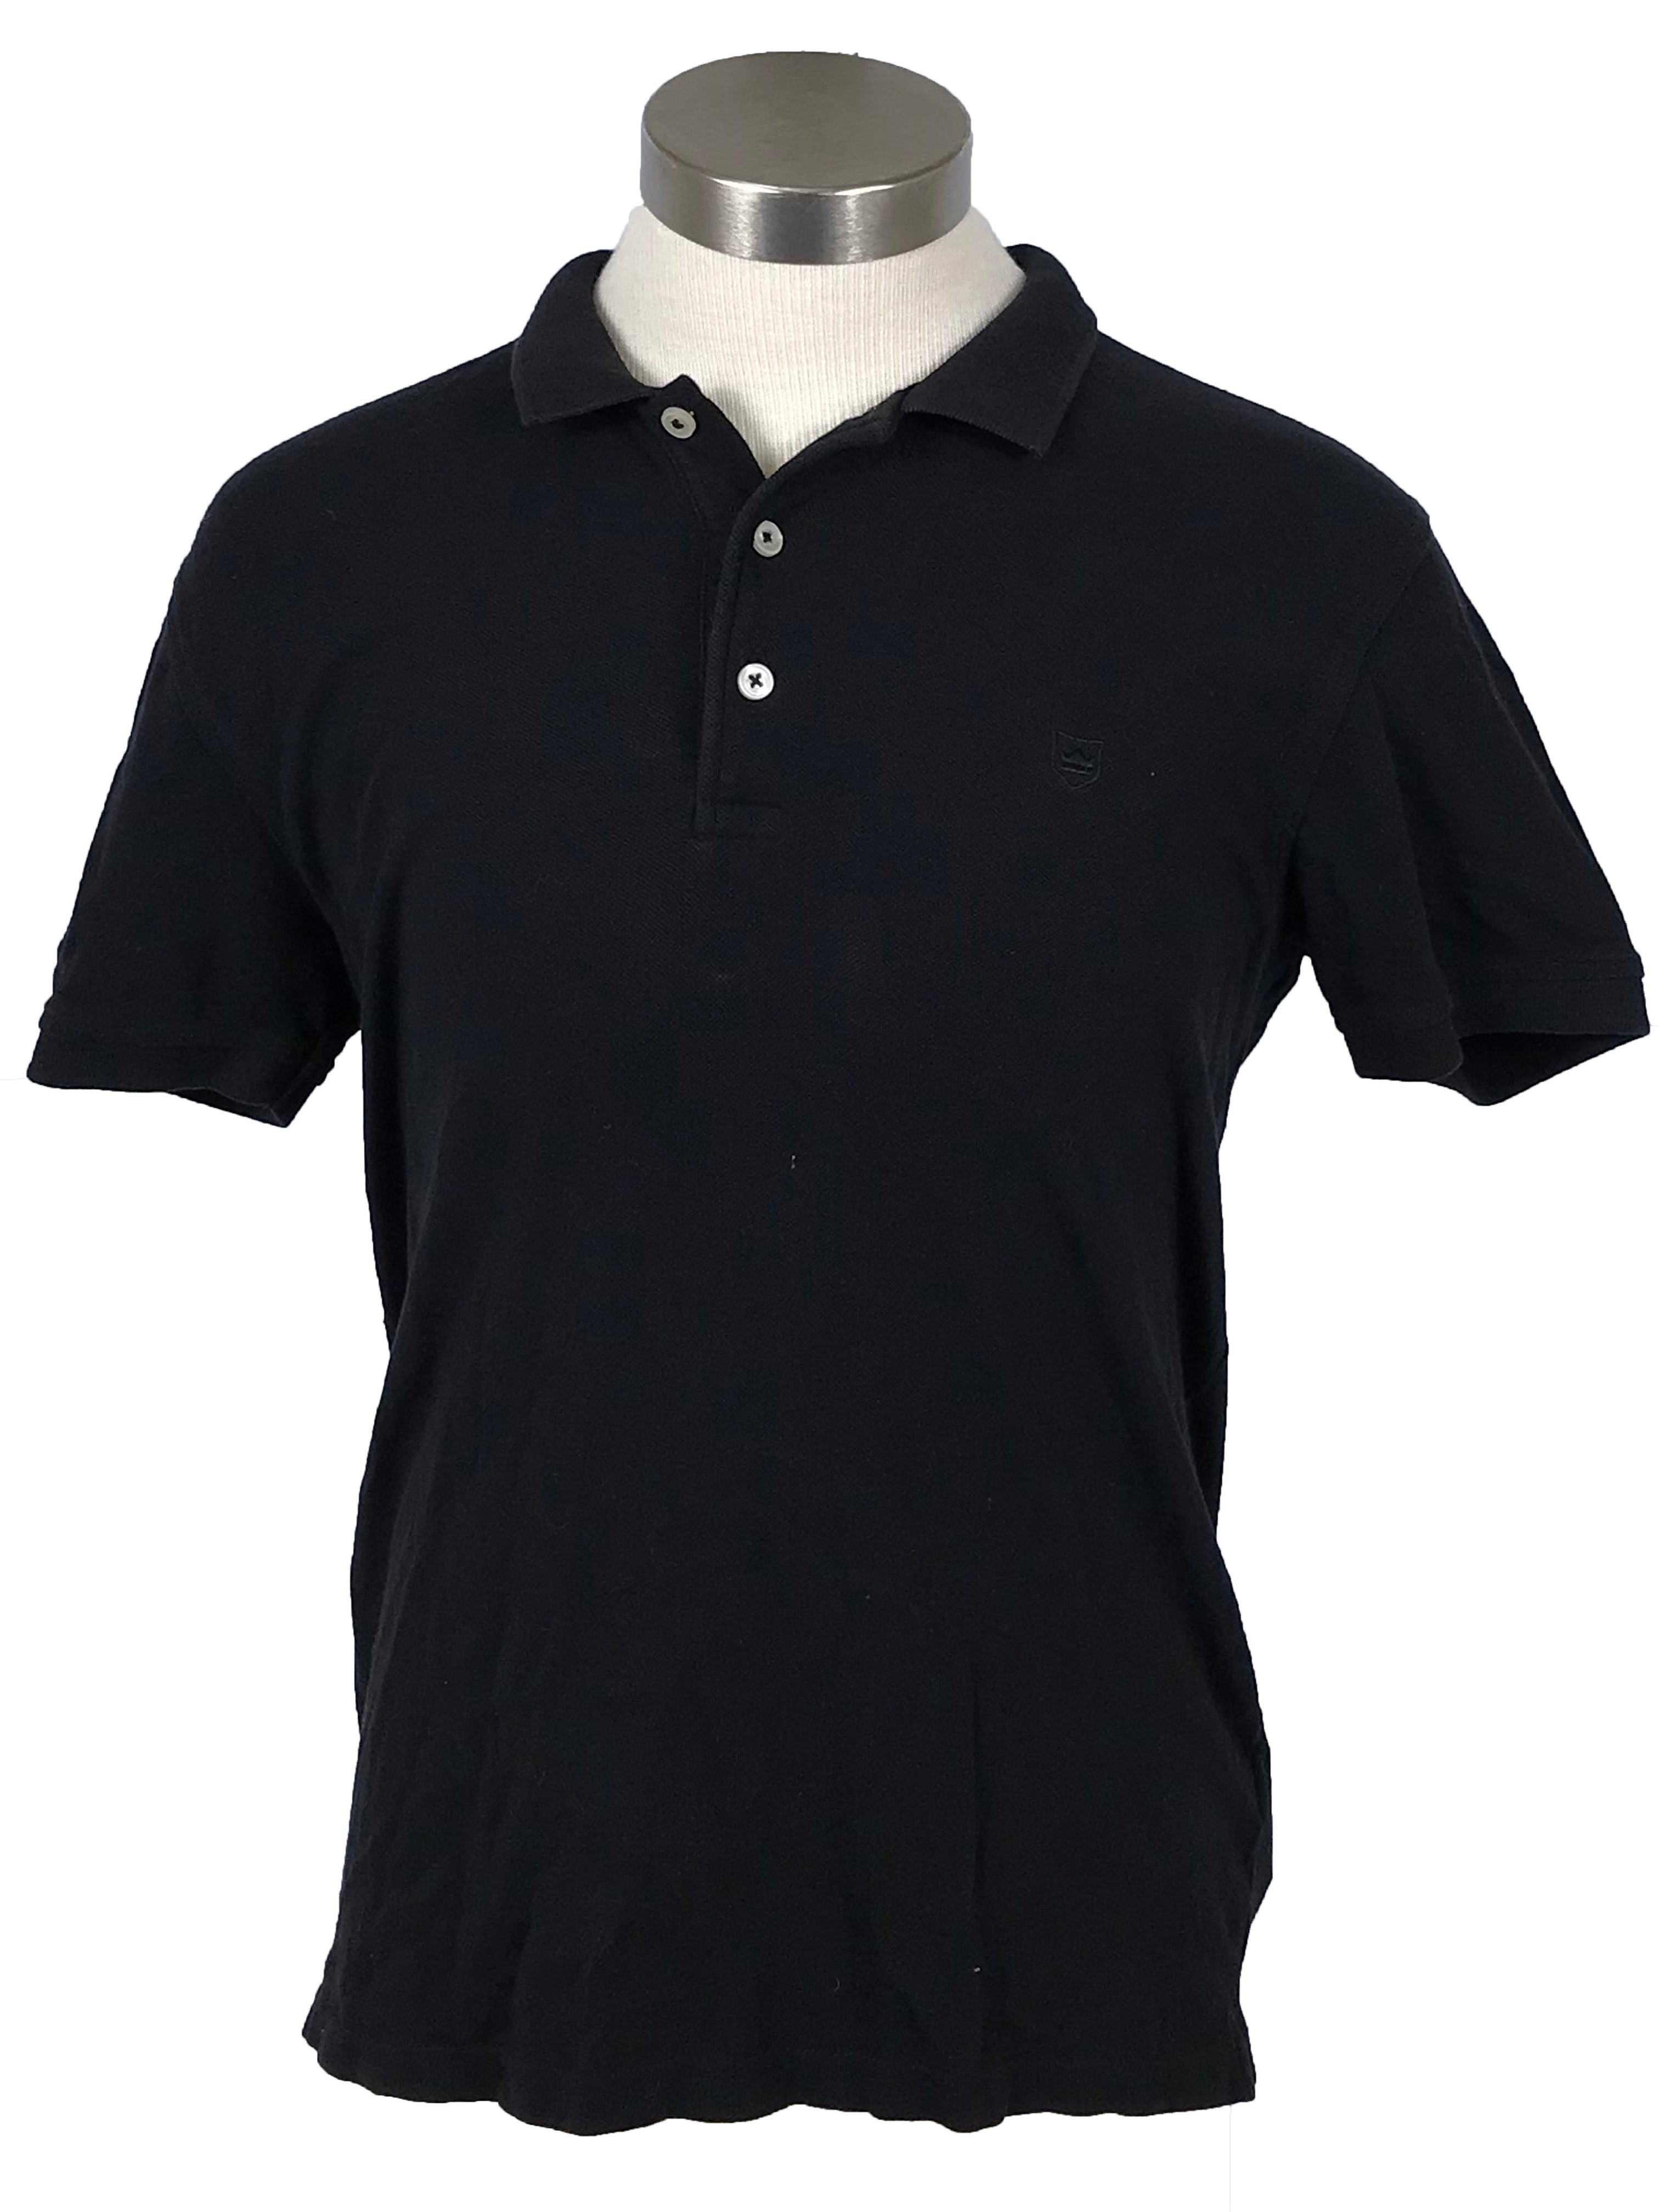 Zara Essentials Black Quarter-Button Polo Shirt Men's Size M